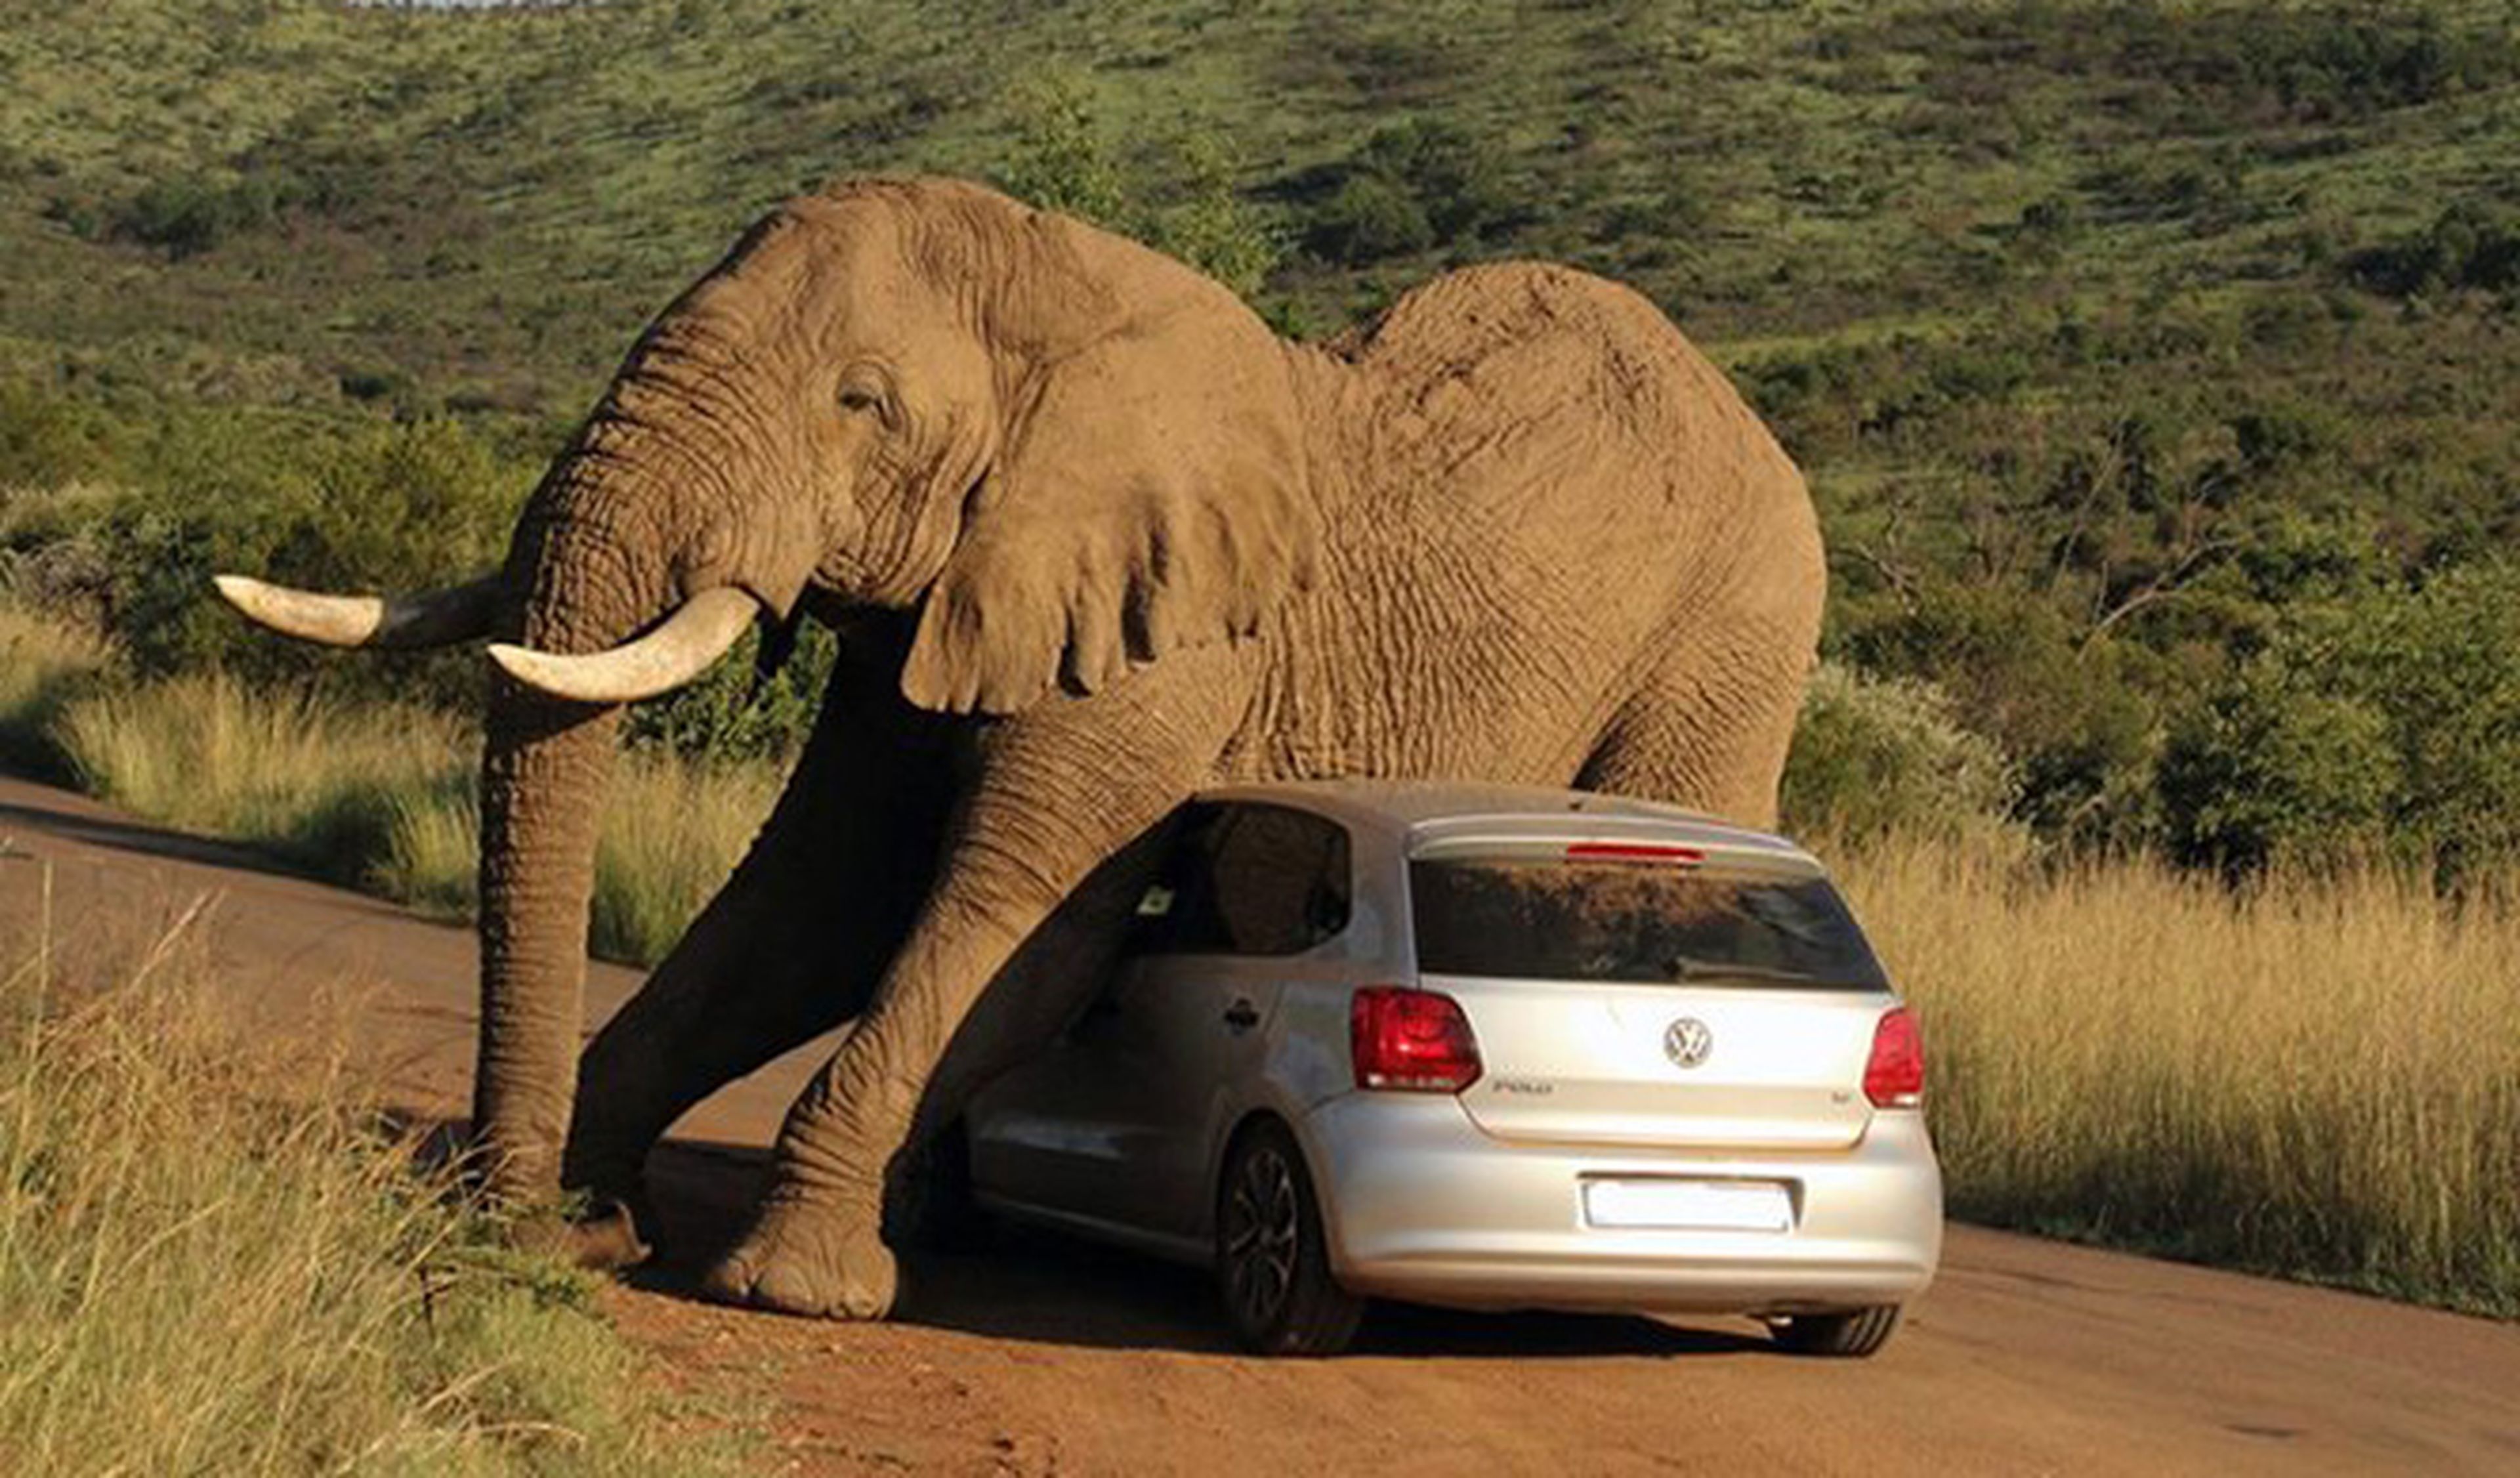 Un gigantesco elefante se rasca contra un Volkswagen Polo